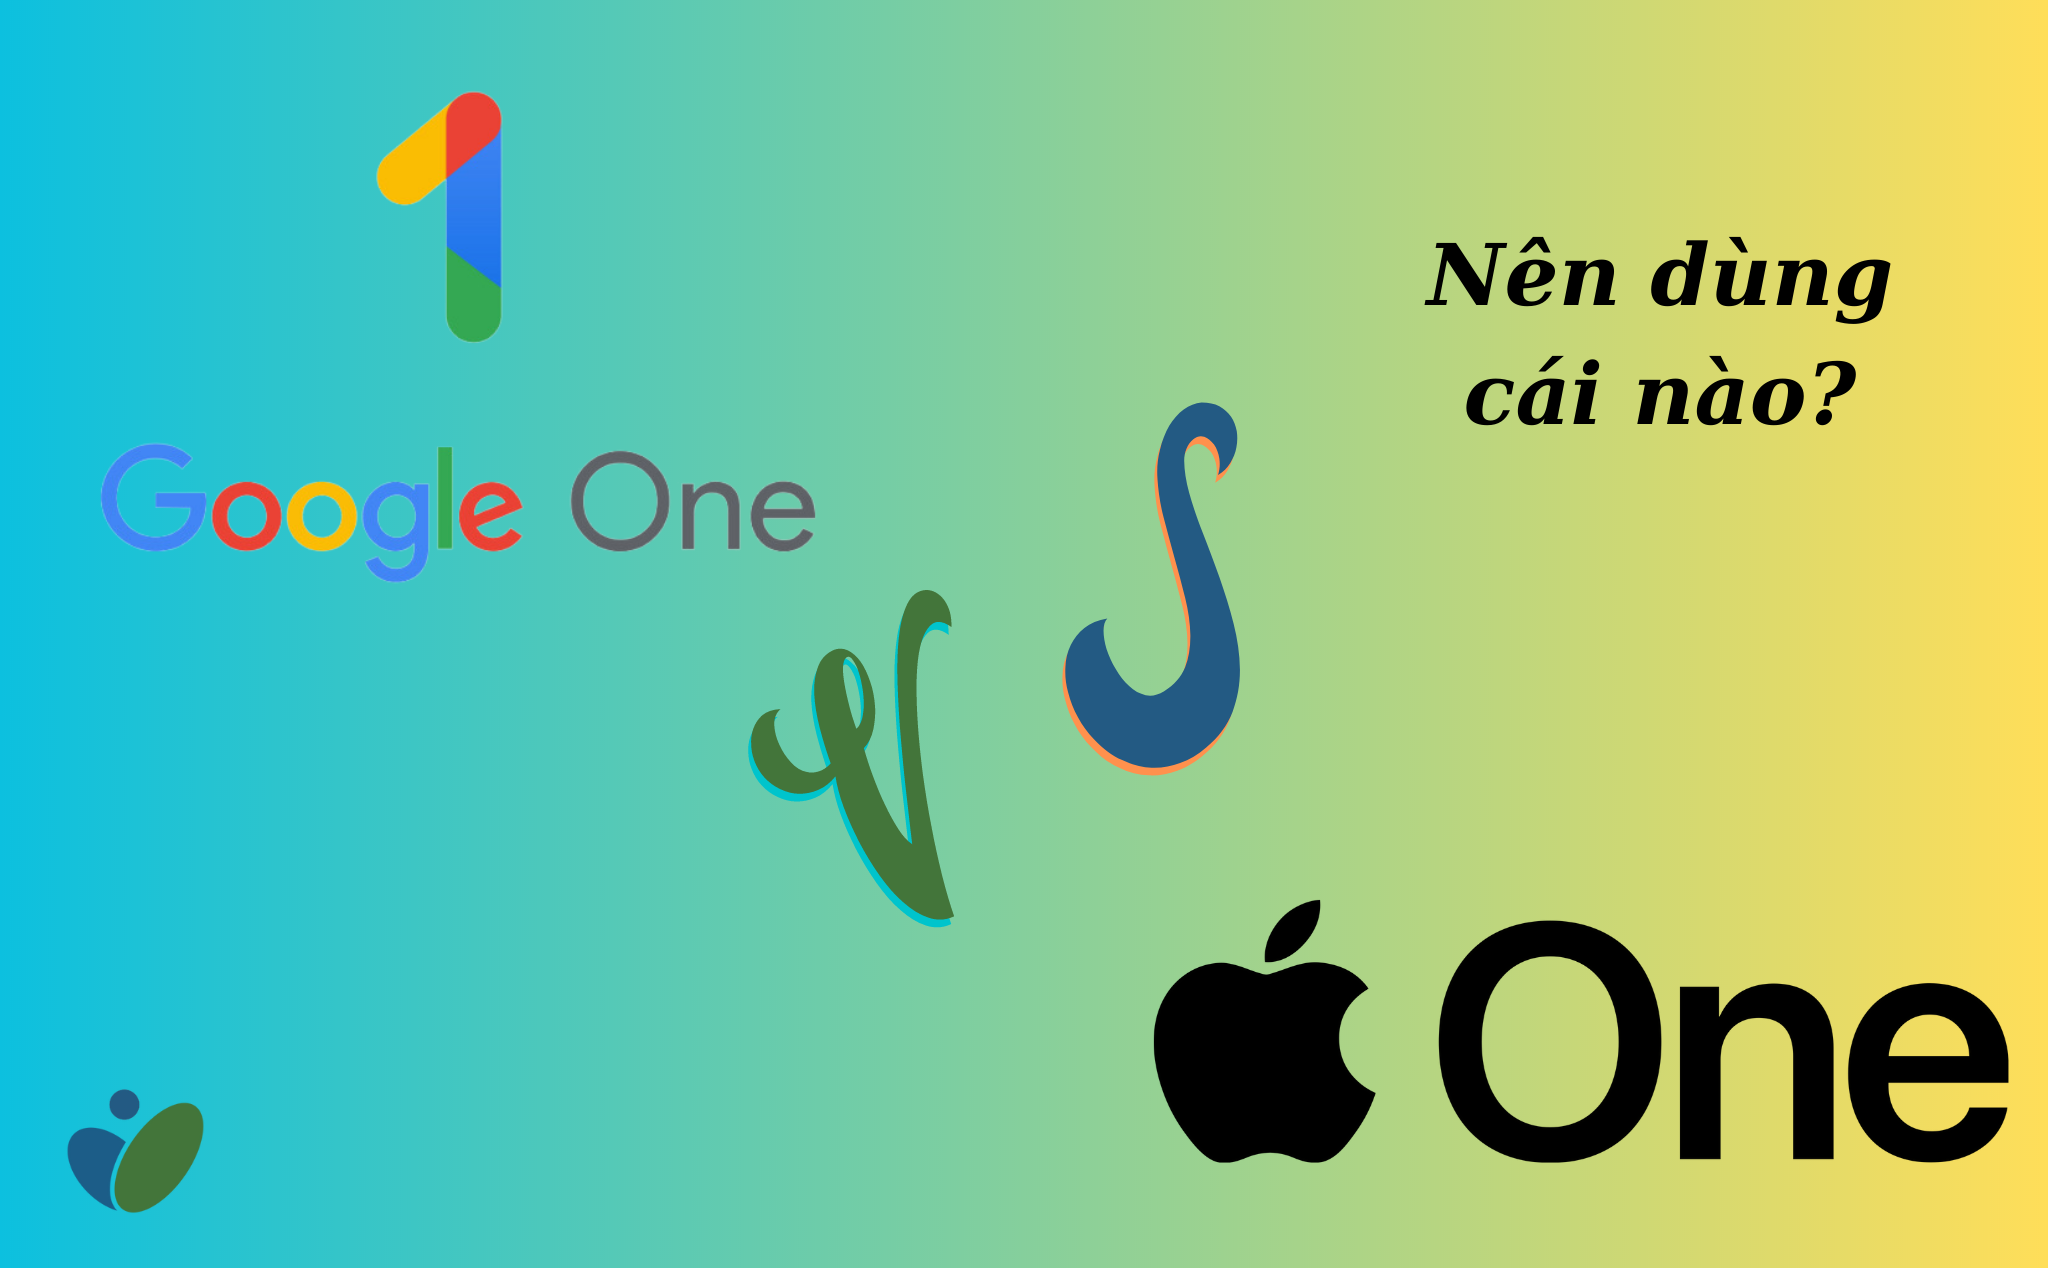 Apple One vs Google One: dùng cái nào?